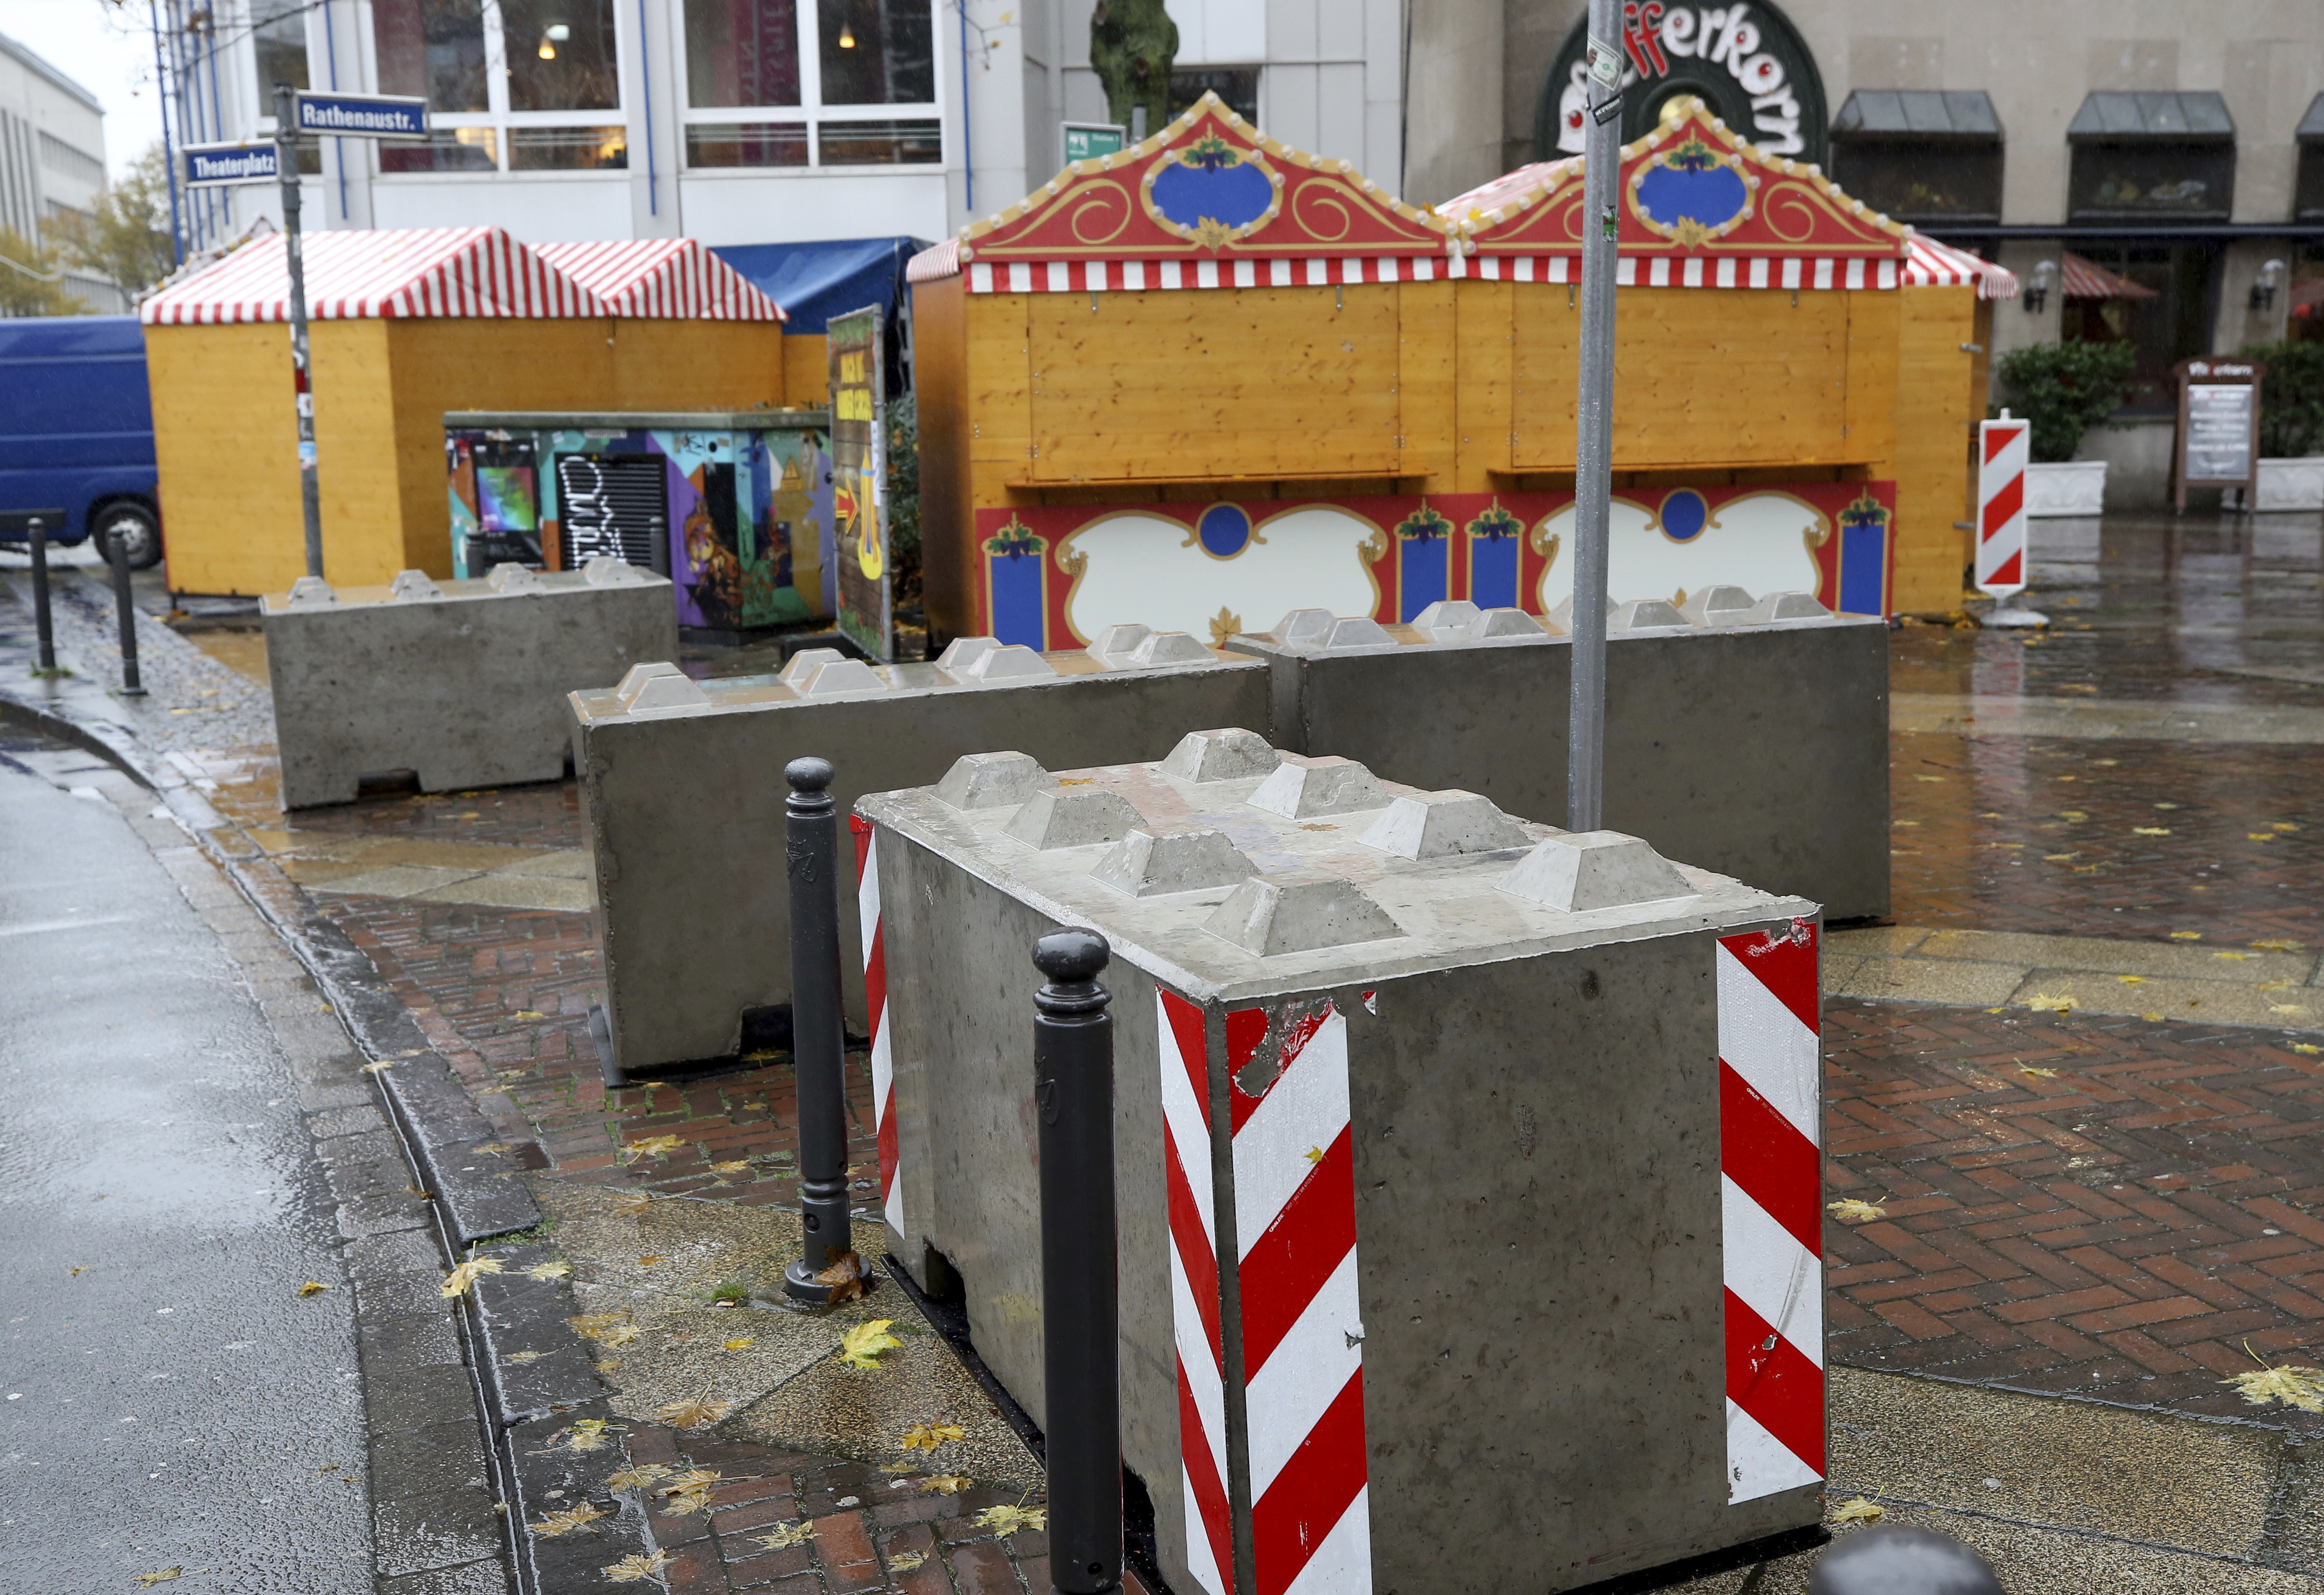 Павилиончетата на традиционния коледен базар в Есен тази година са защитени с бетонни блокове заради опасения от тероризъм